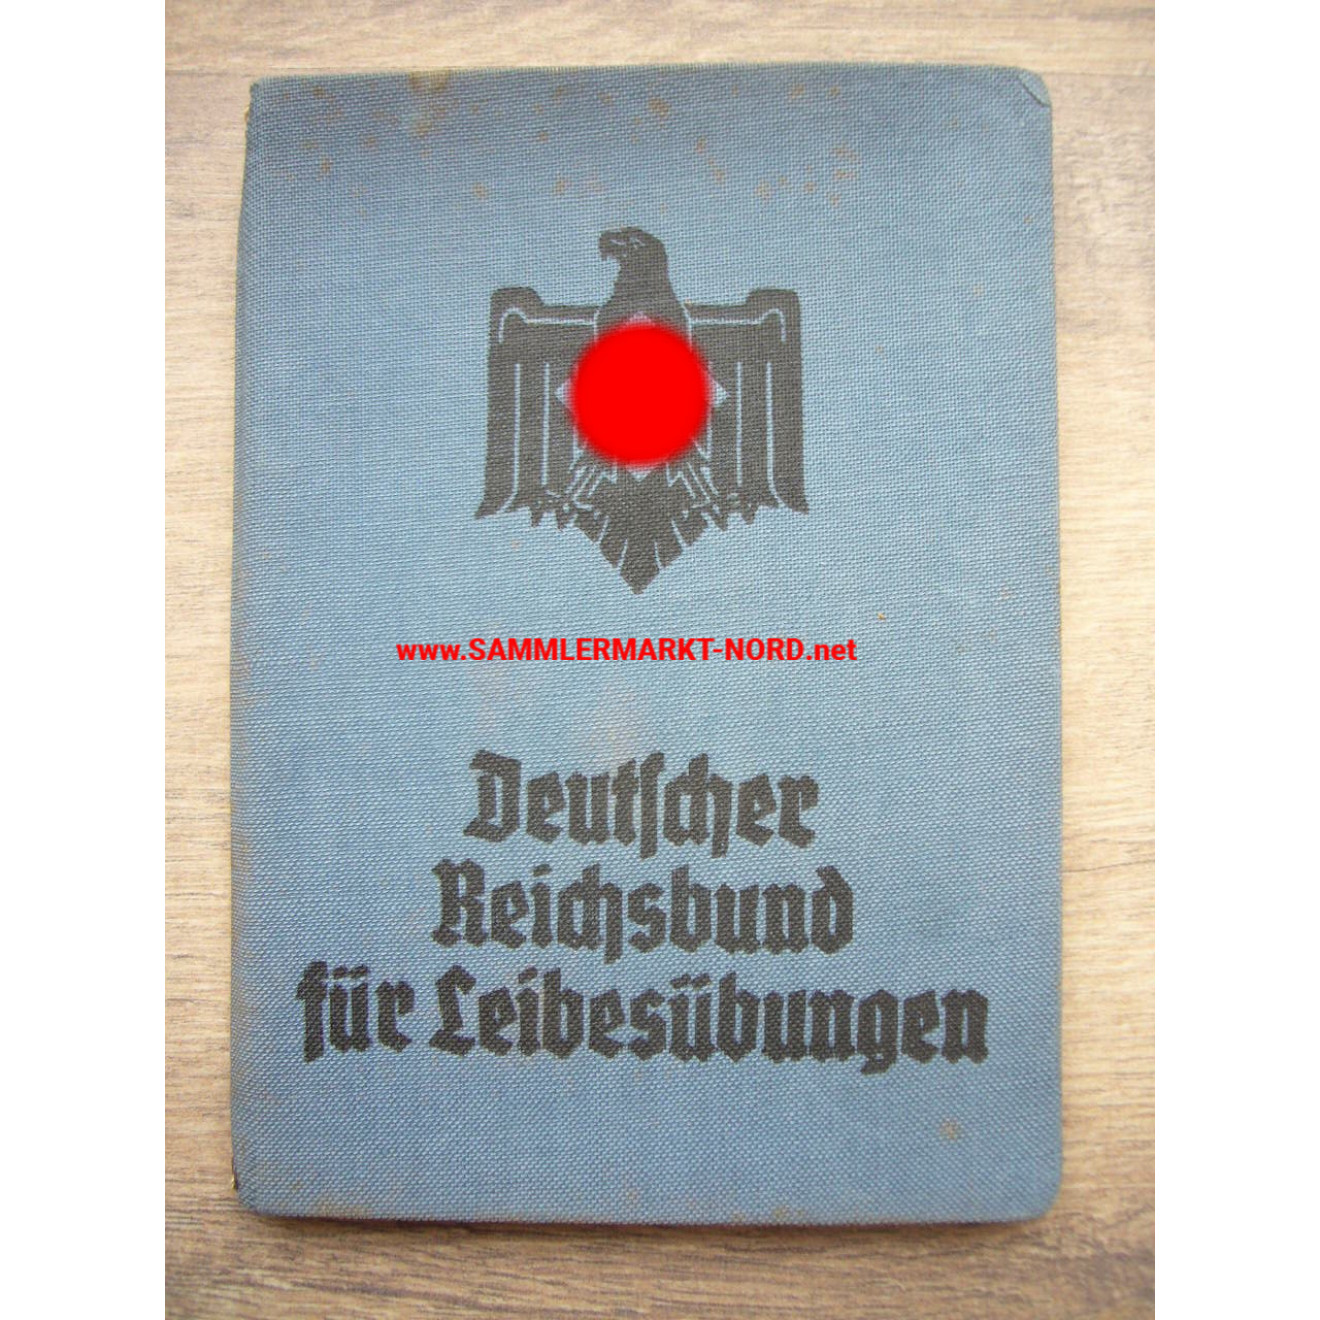 DRL Deutscher Reichsbund für Leibesübungen - Membership book - Weichold